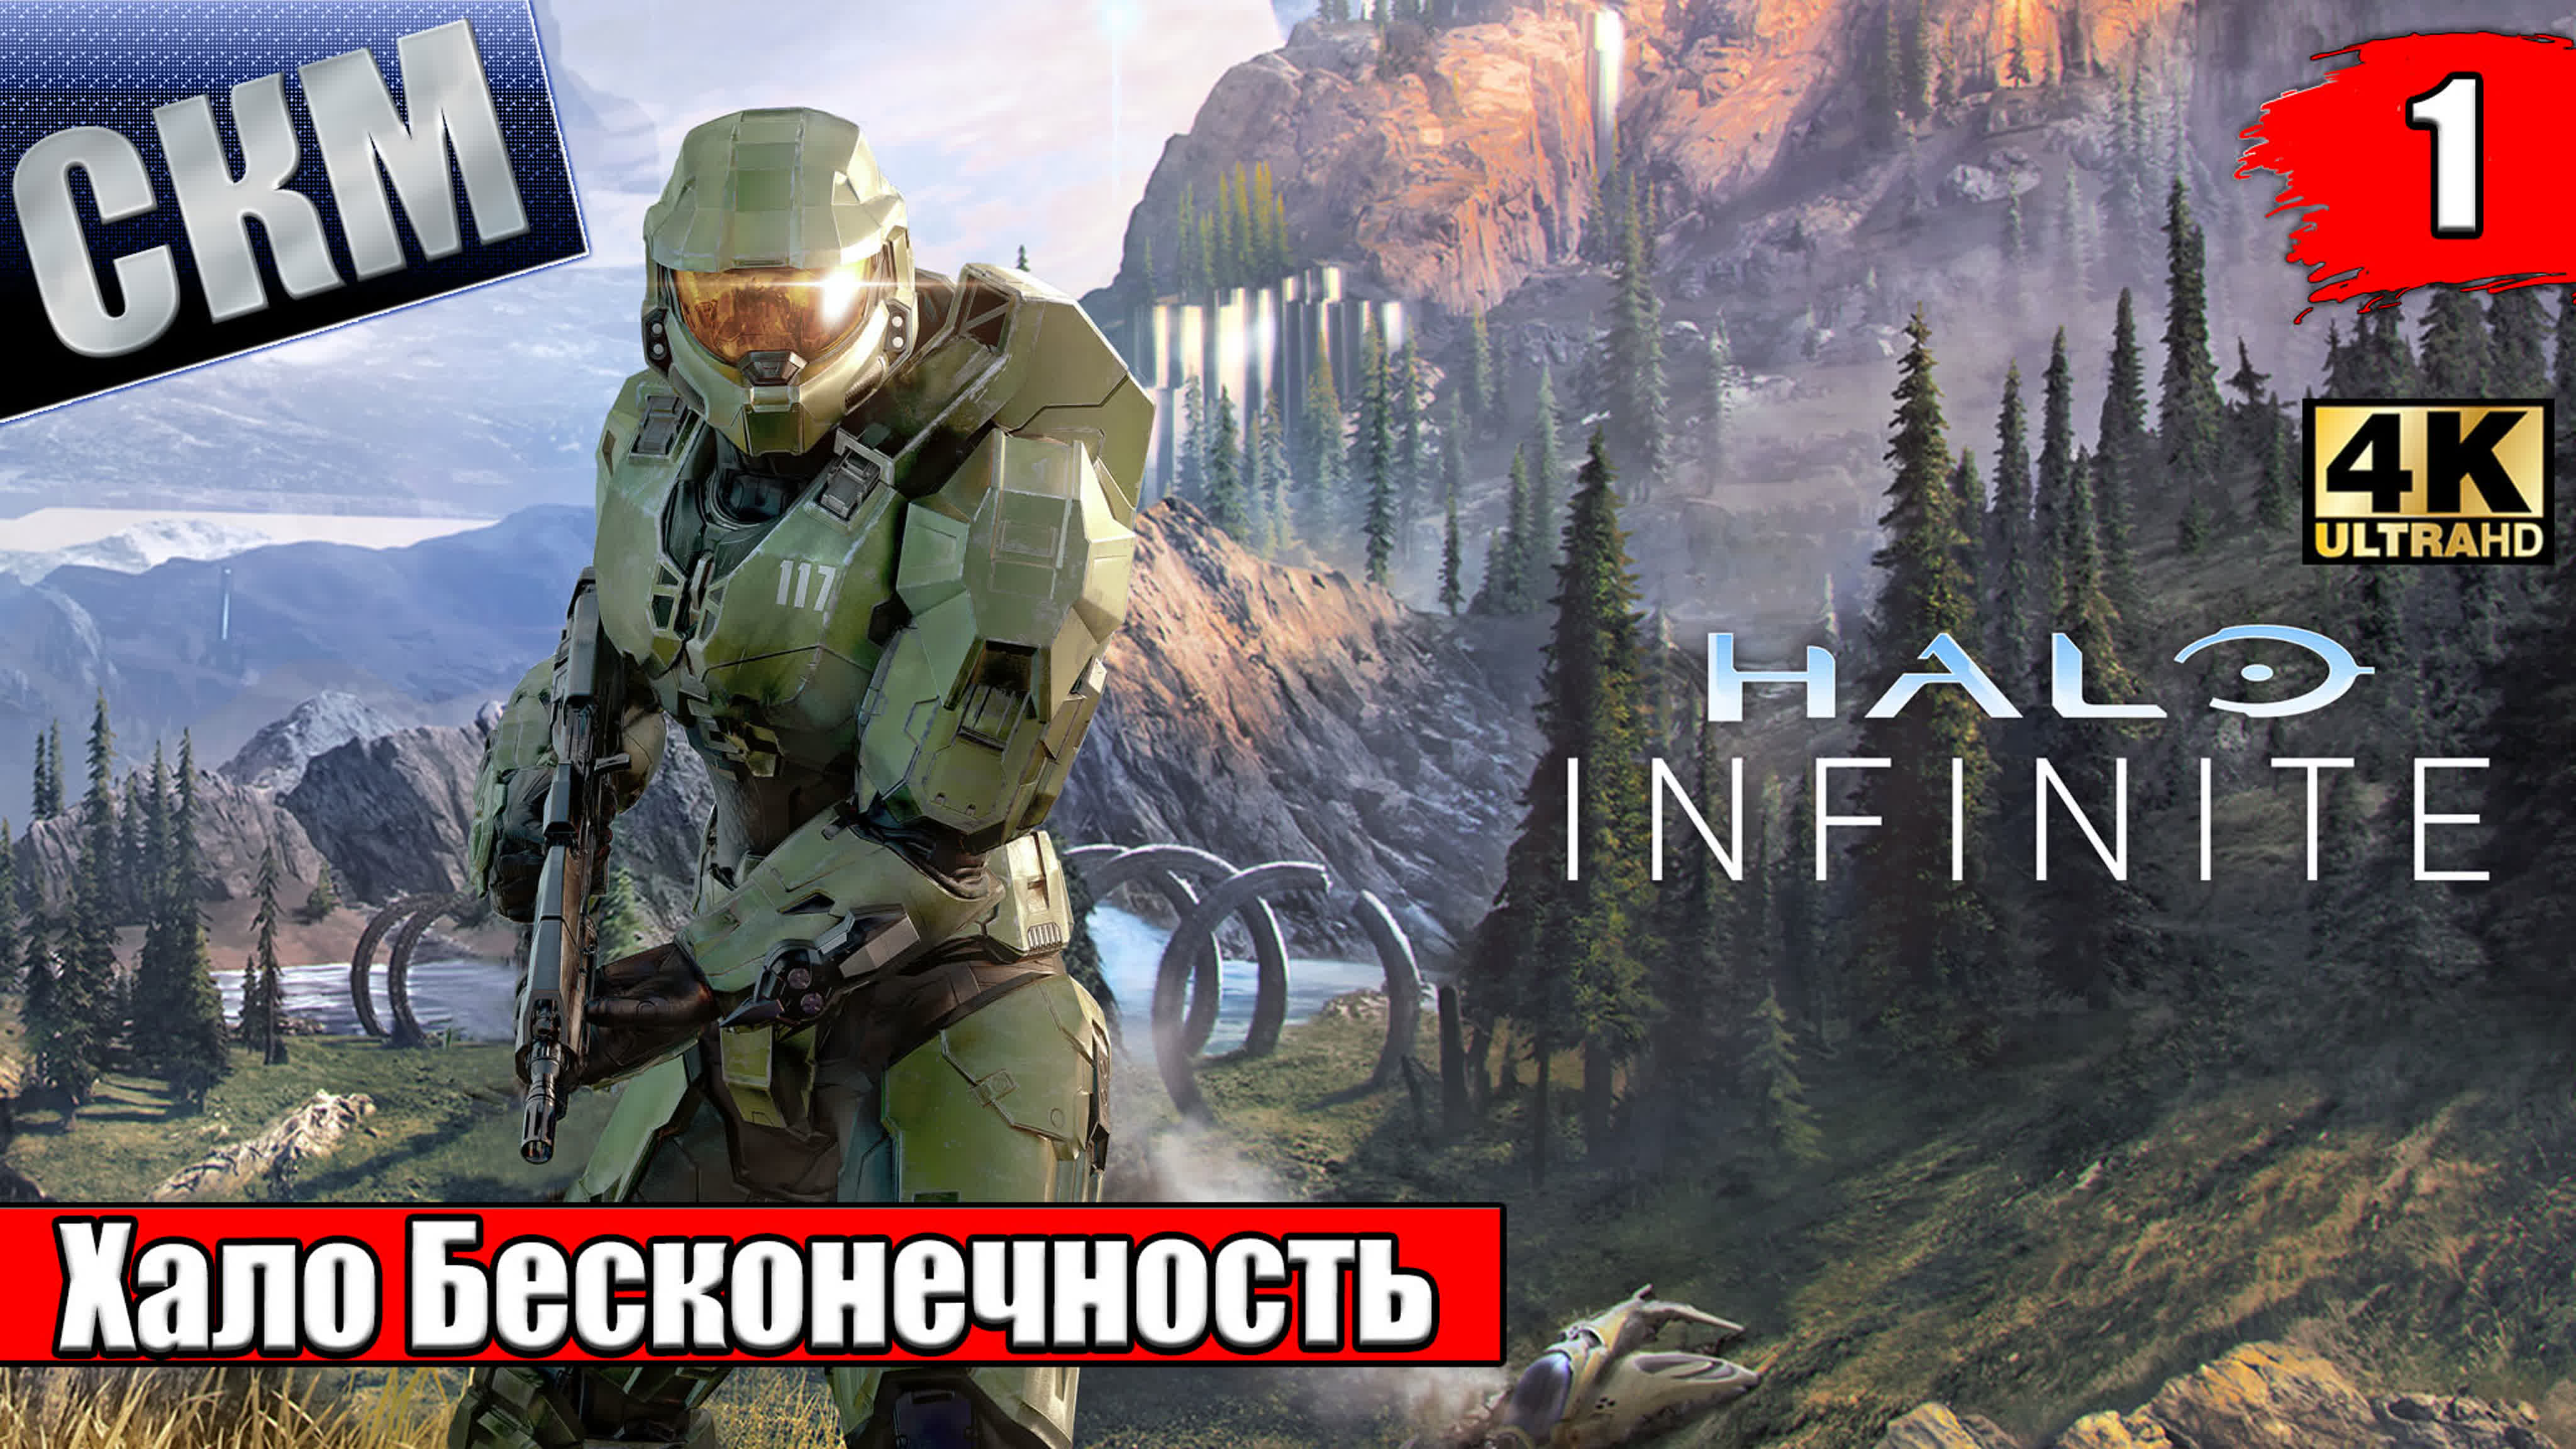 Halo Infinite (Xbox Series X)